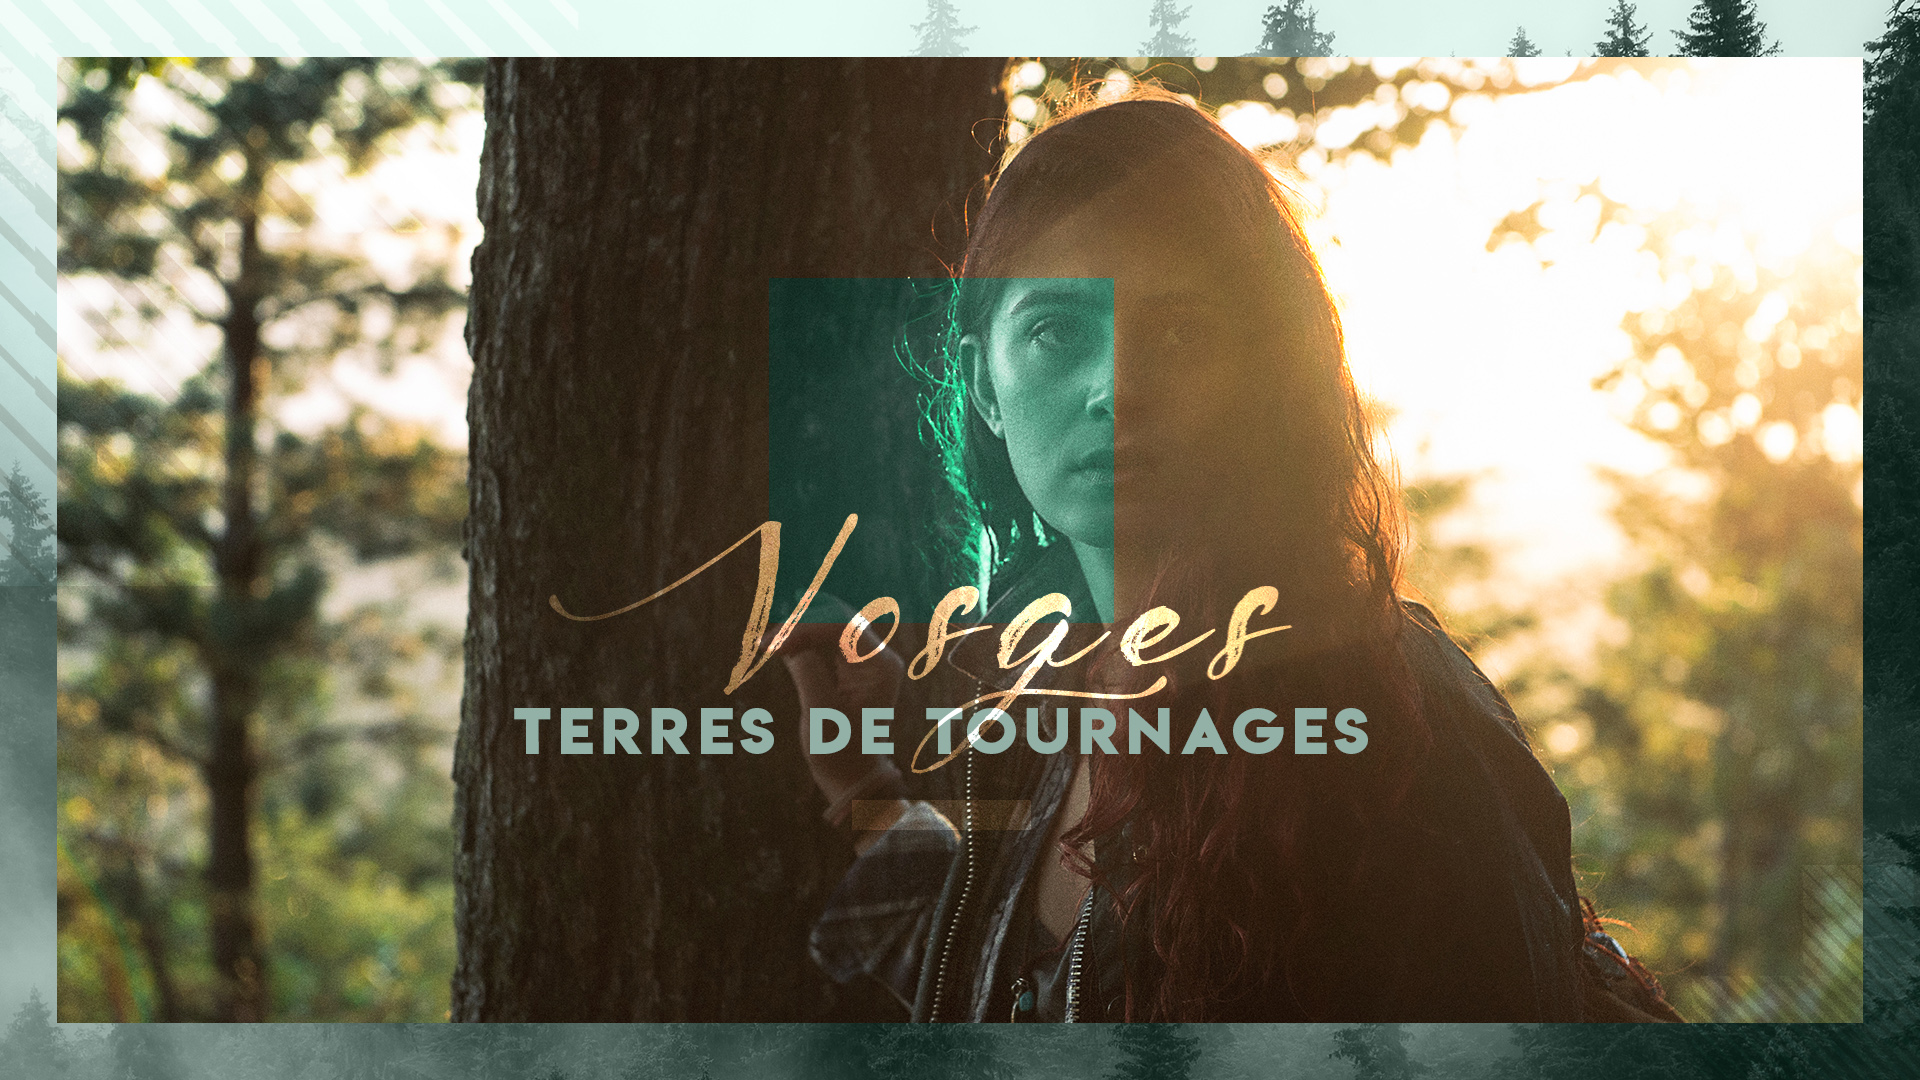 Vosges Terres de Tournages : 4 courts métrages en cours cet été sur notre département 